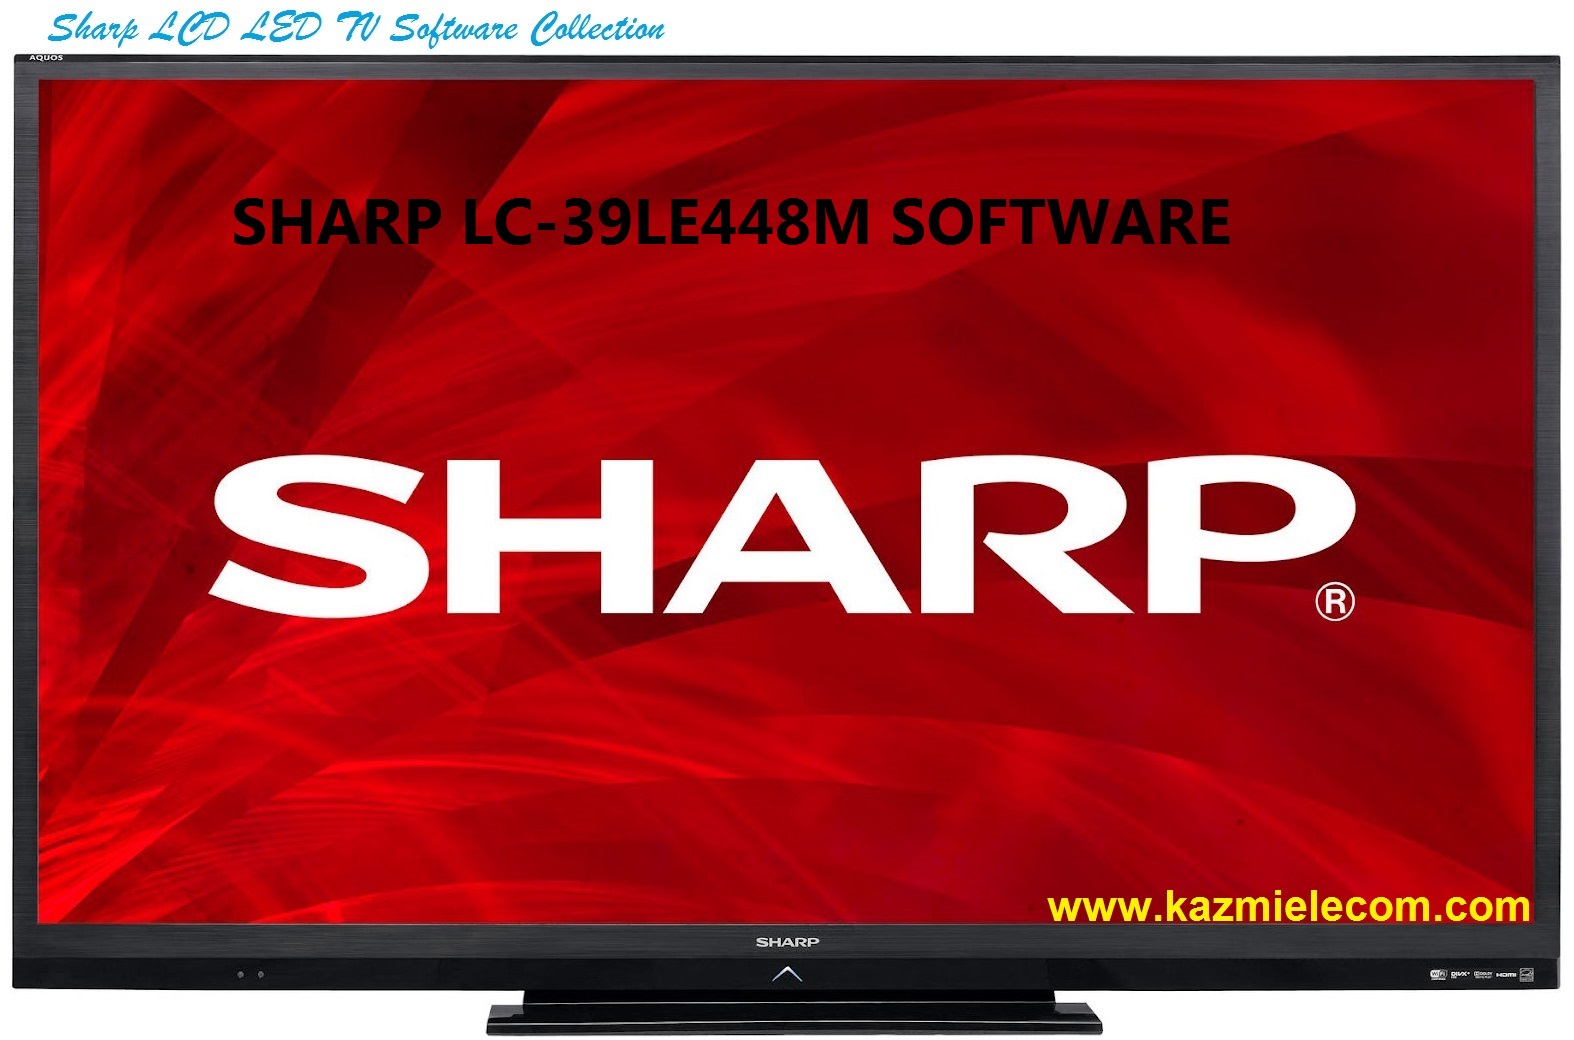 Sharp Lc-39Le448M